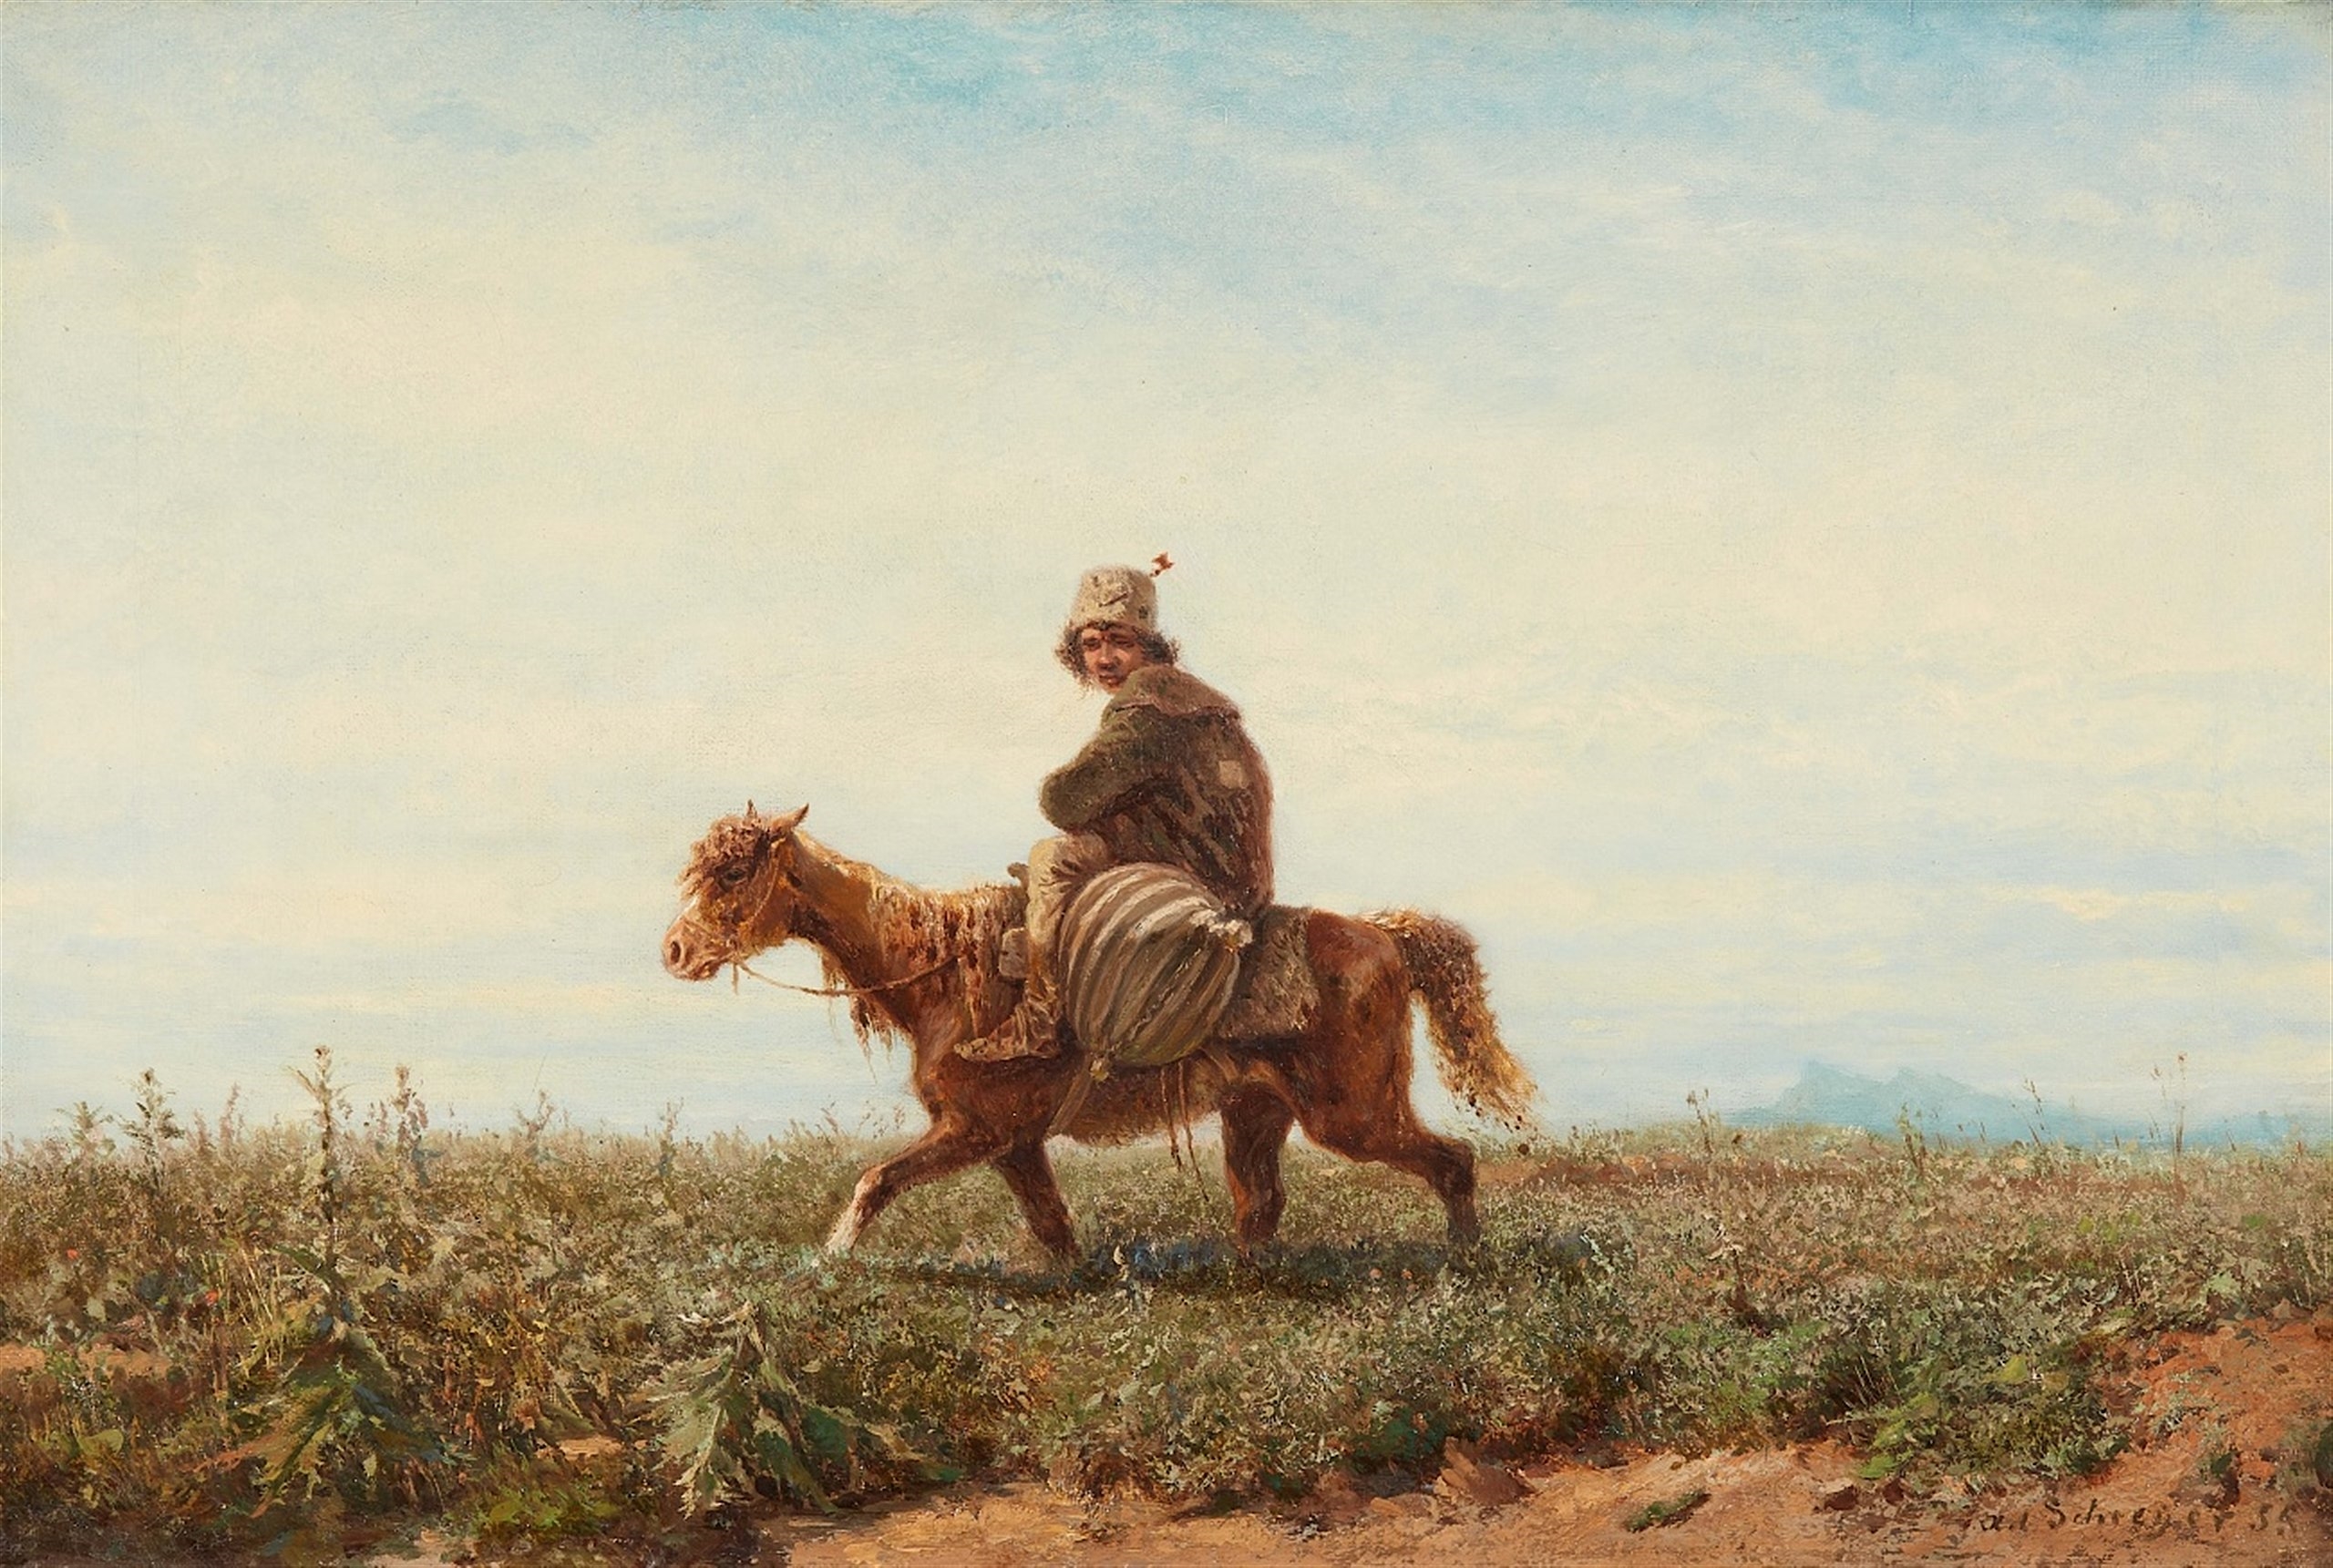  Vlachian Horseman by Christian Adolph Schreyer, 59